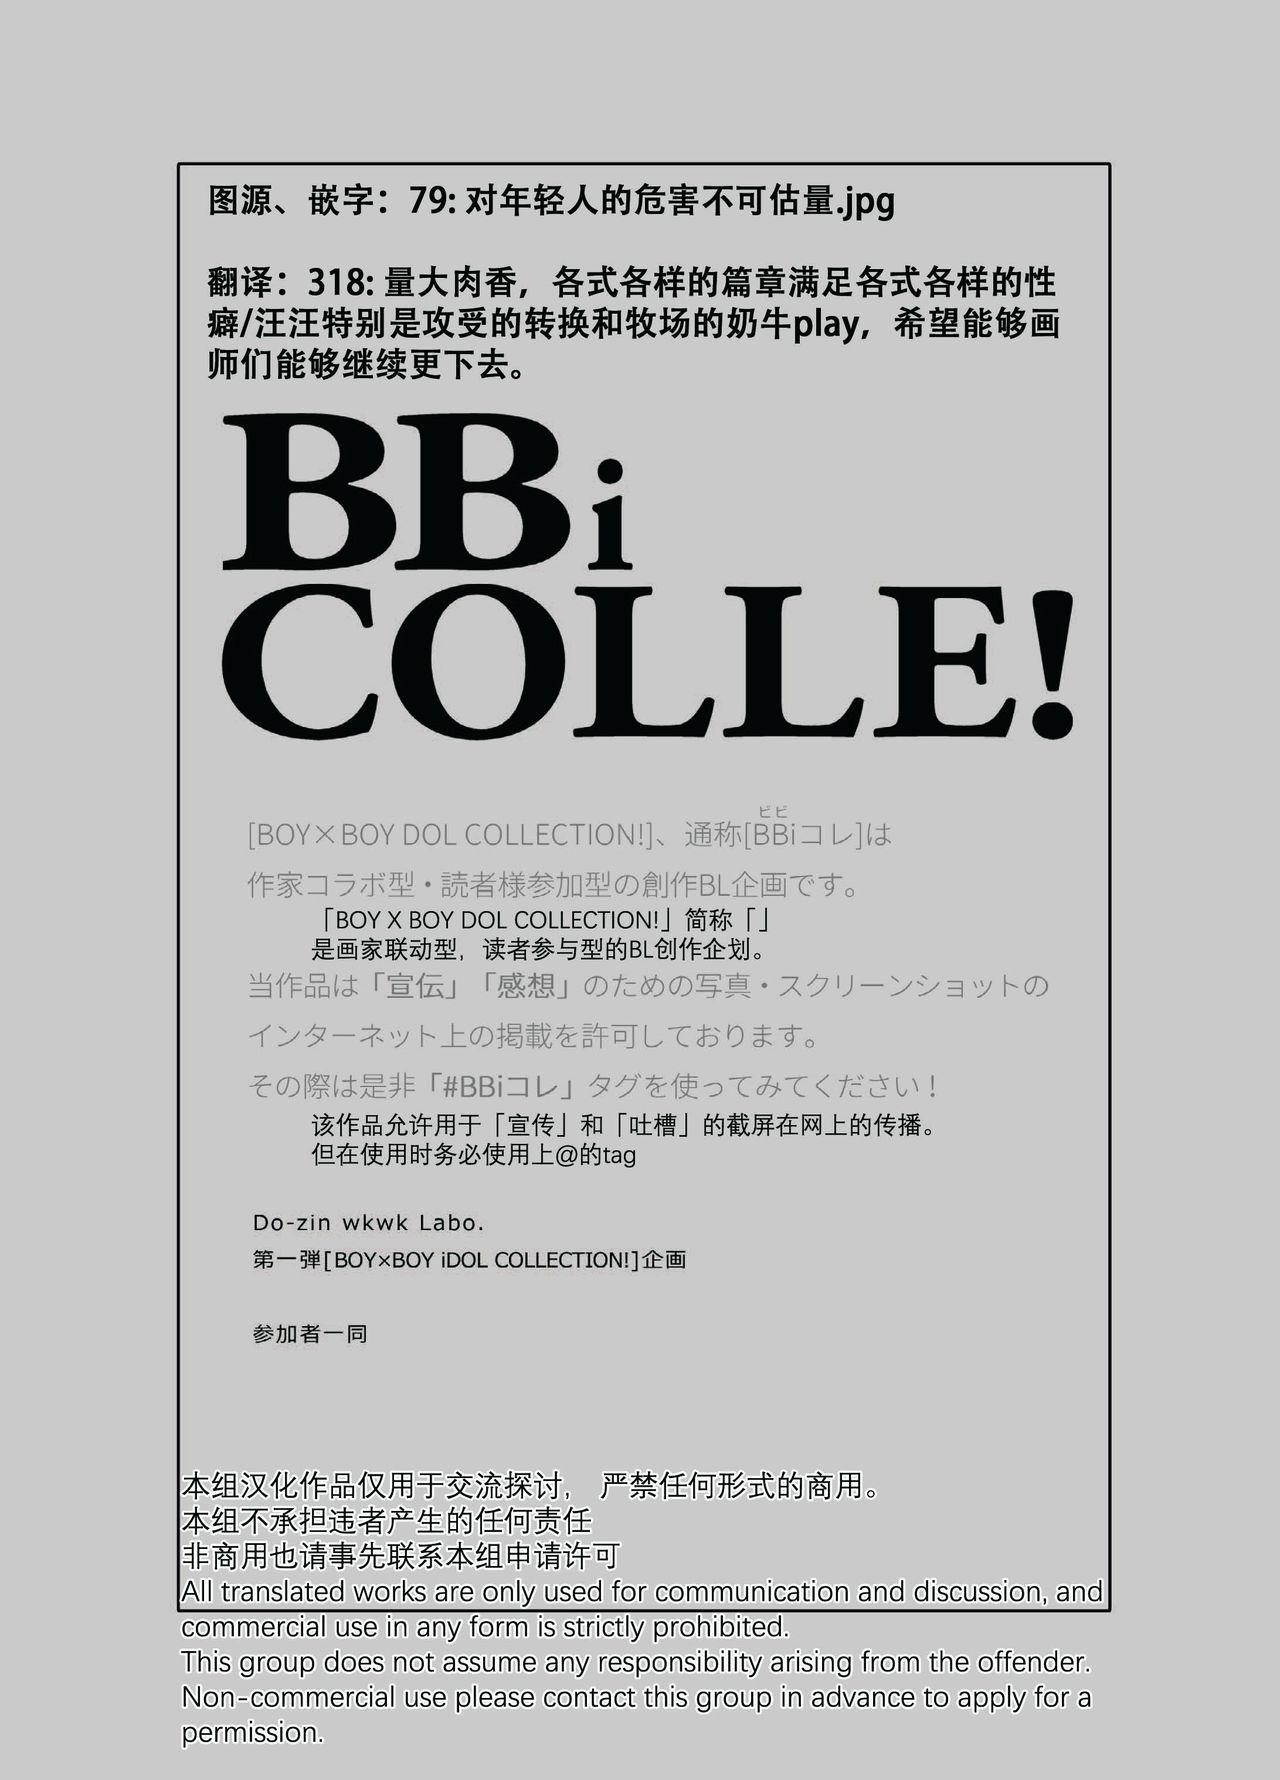 Funny BOY x BOY IDOL COLLECTION! | 男男爱豆搜罗！ - Original Toys - Page 10